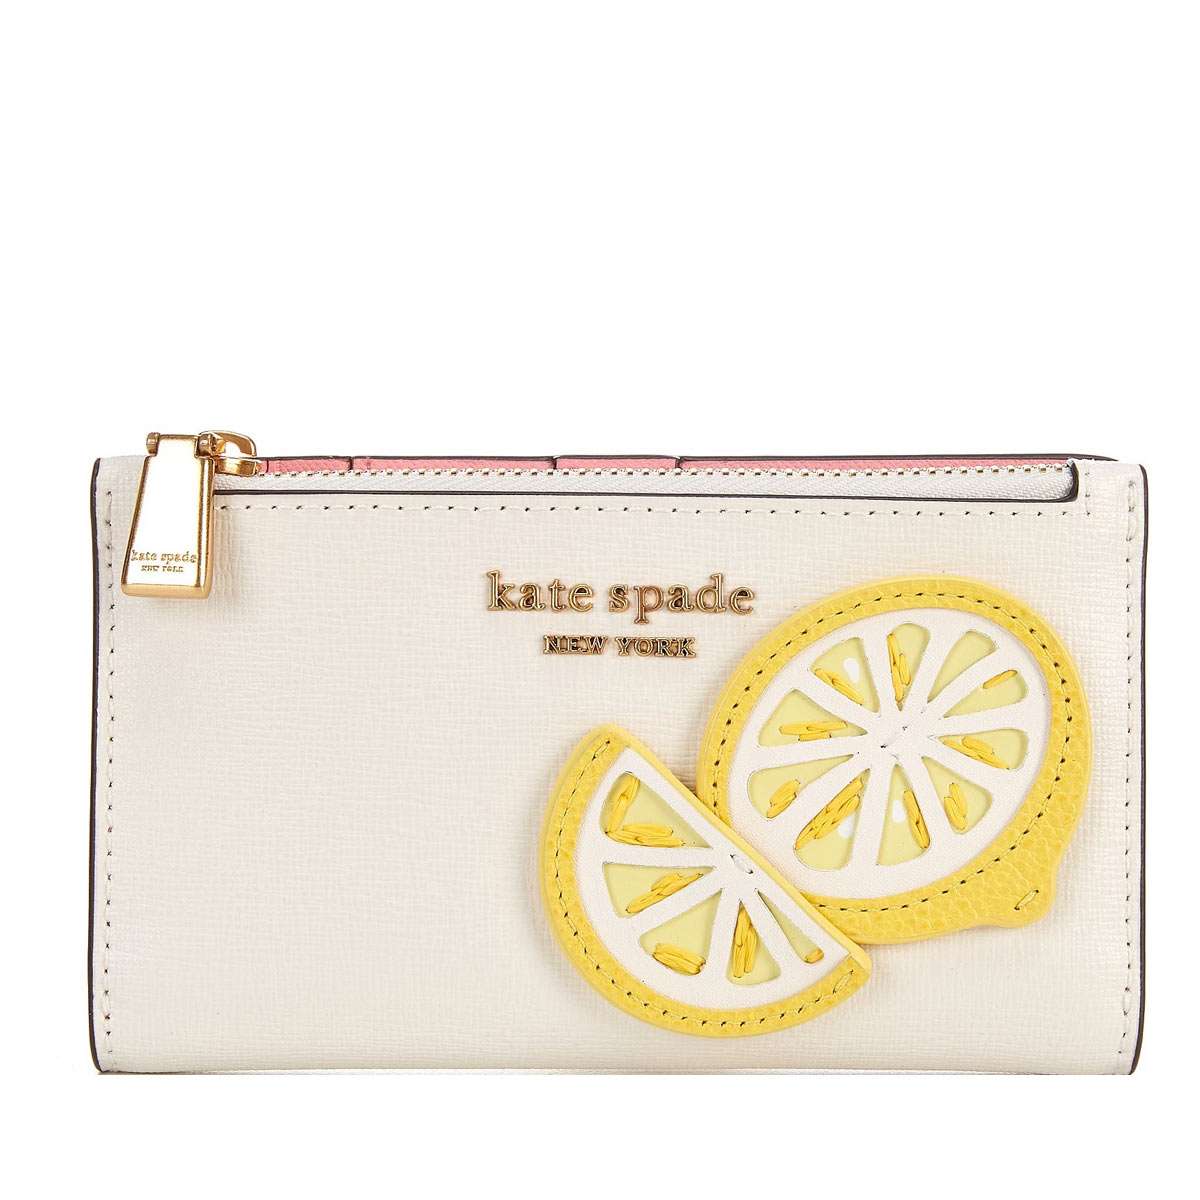 ケイトスペード 財布 二つ折り財布 レディース ブランド 革 レザー 小銭入れあり カード入れ 多い アウトレットではない正規品 Kate Spade